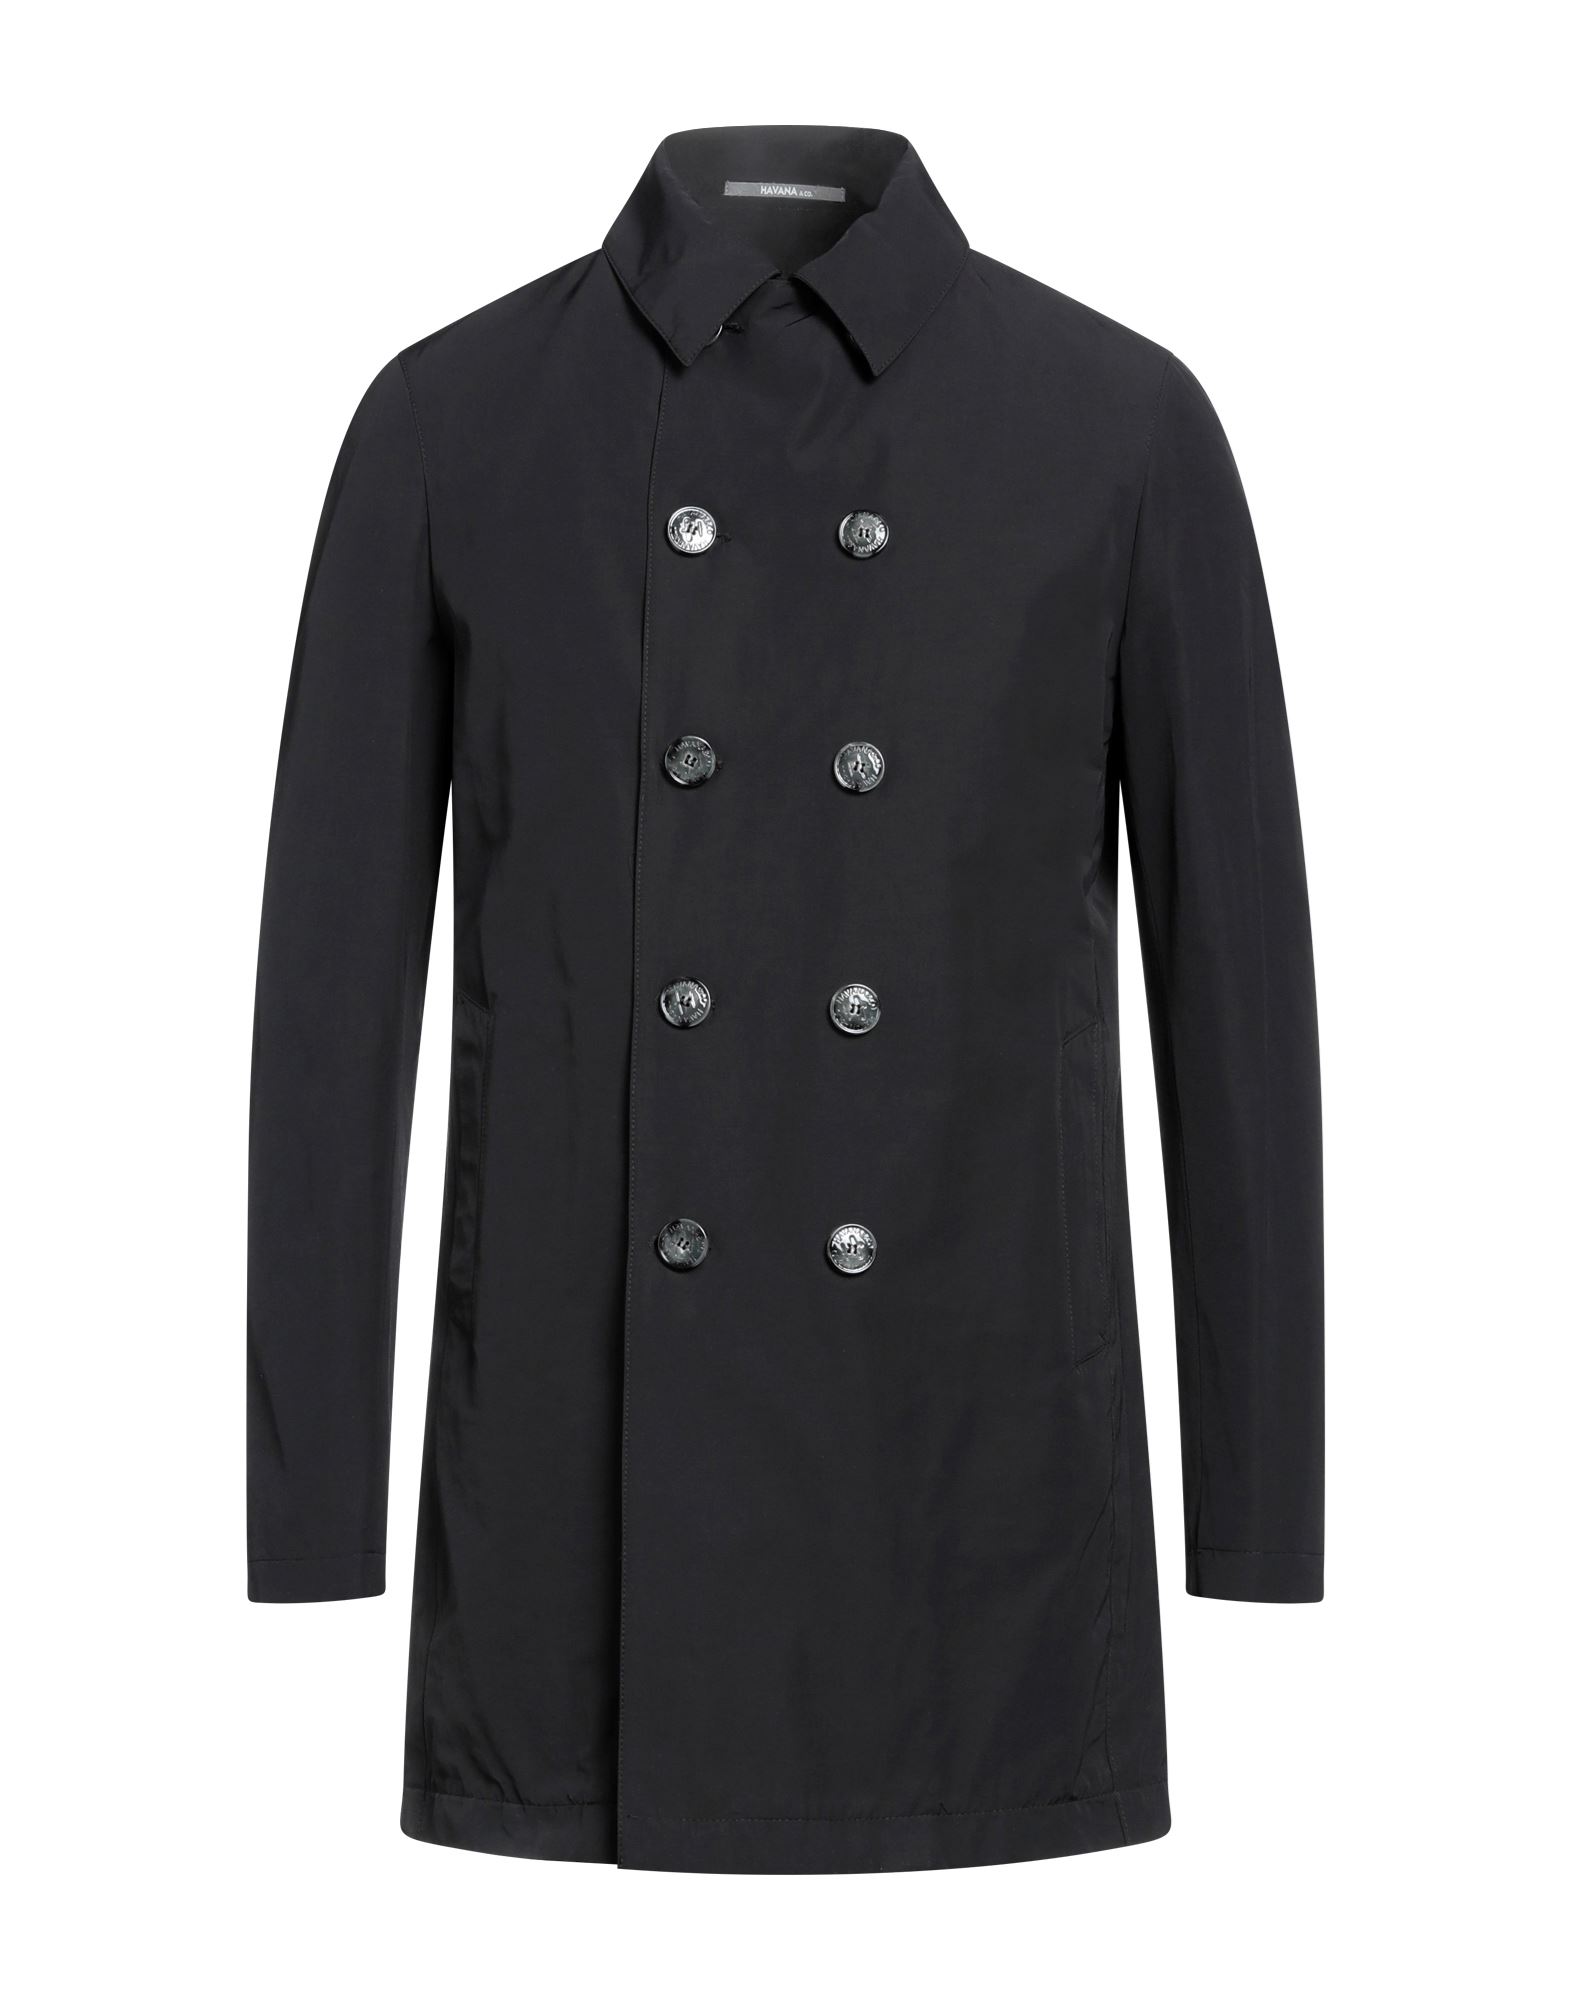 Shop Havana & Co. Man Coat Black Size 44 Polyester, Cotton